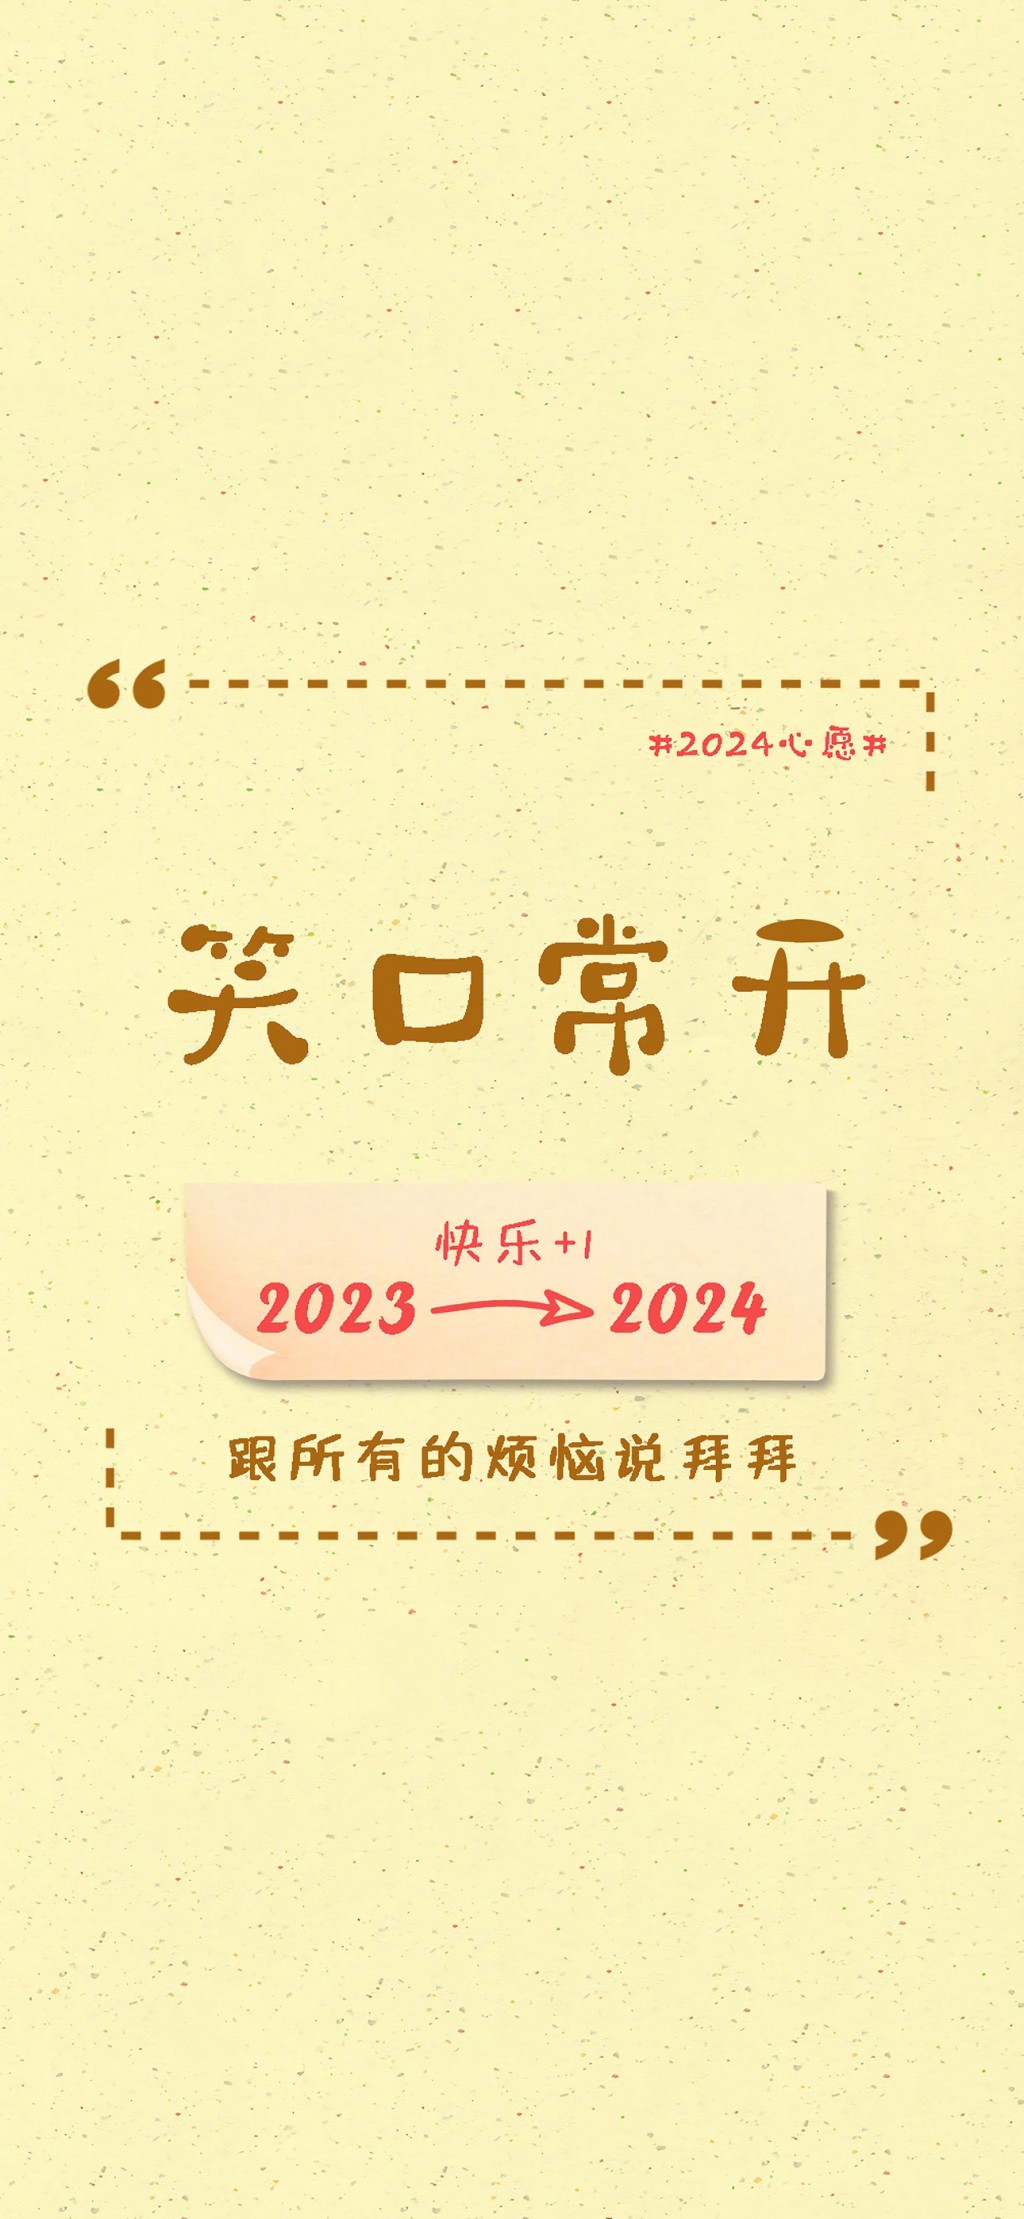 2024跨年朋友圈文案手机壁纸